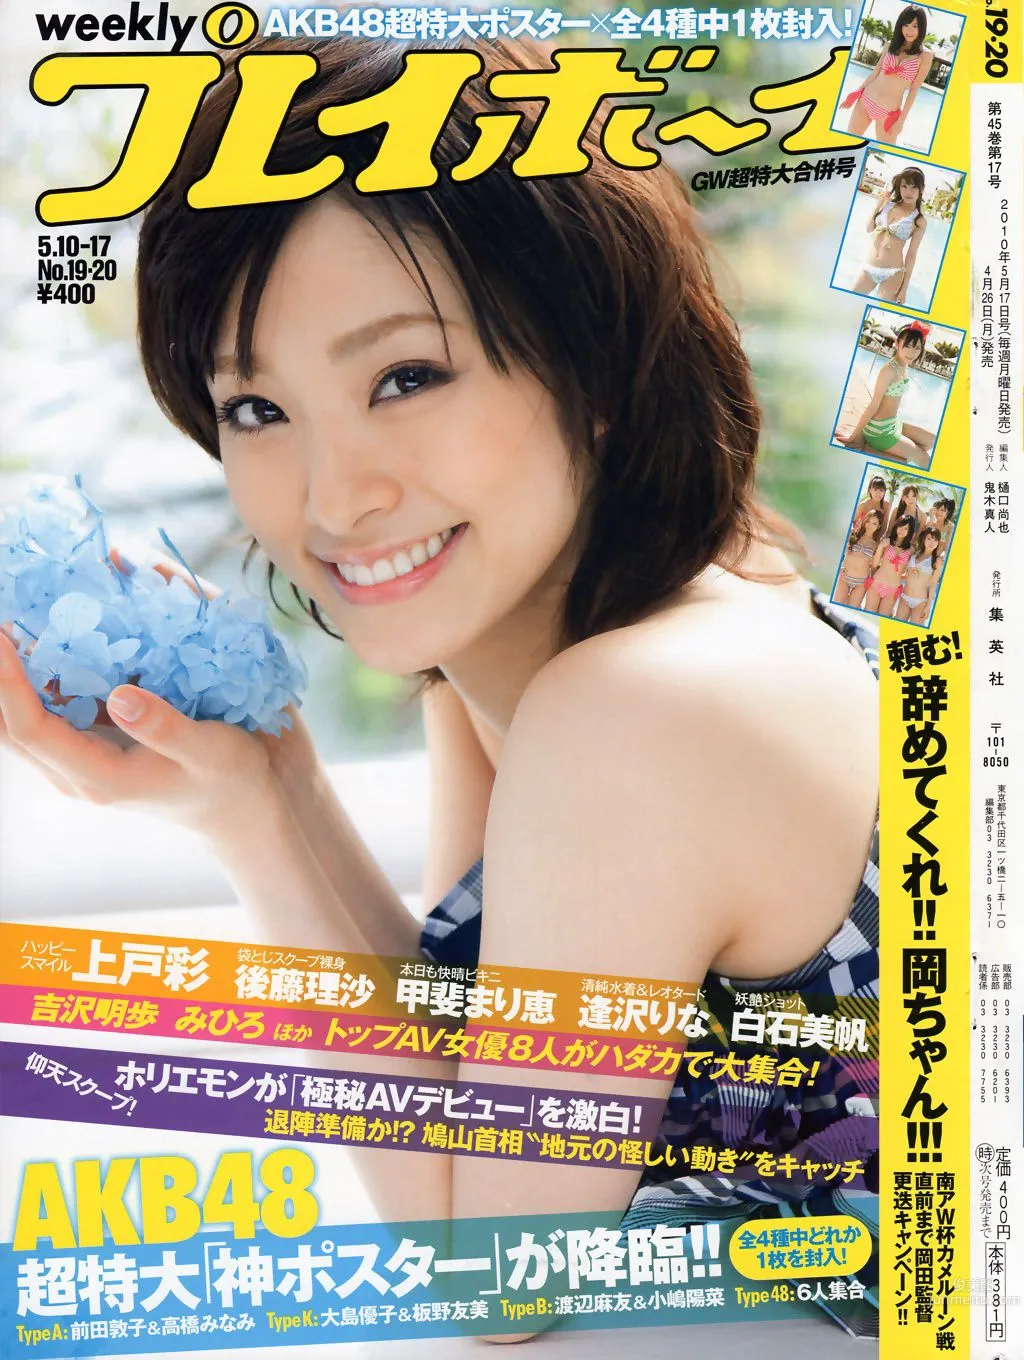 上戸彩 逢沢りな 甲斐まり恵 AKB48 白石美帆 後藤理沙 [Weekly Playboy] 2010年No.19-20 写真杂志1